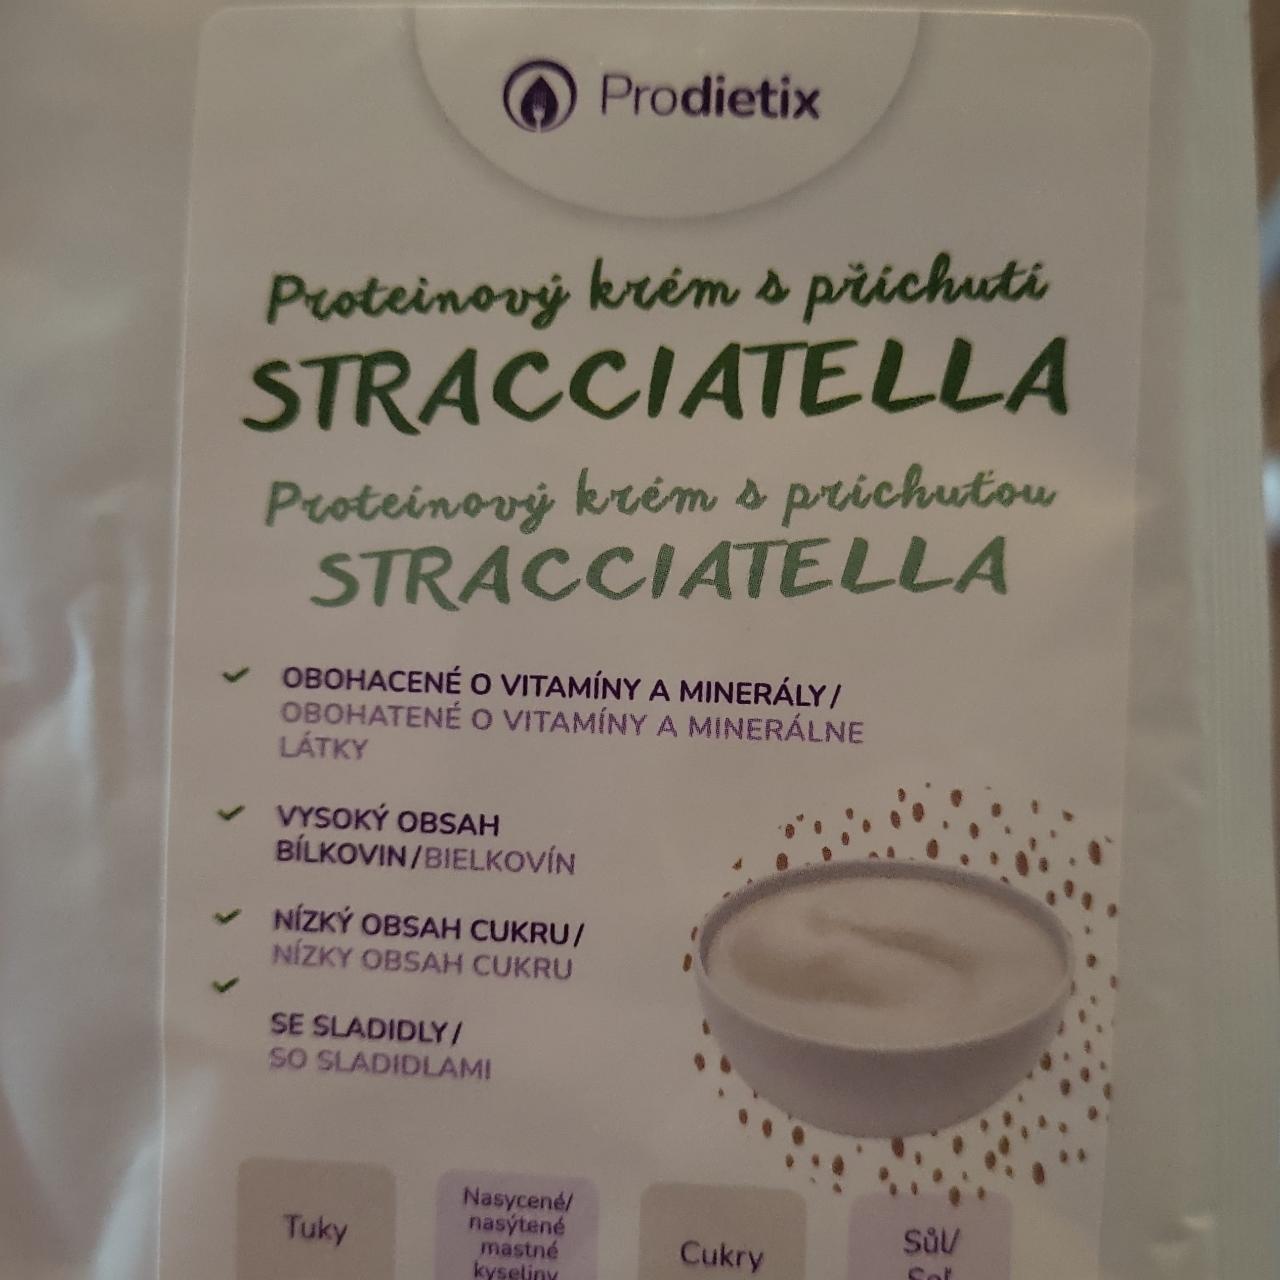 Fotografie - Proteinový krém s příchutí sttacciatella Prodietix